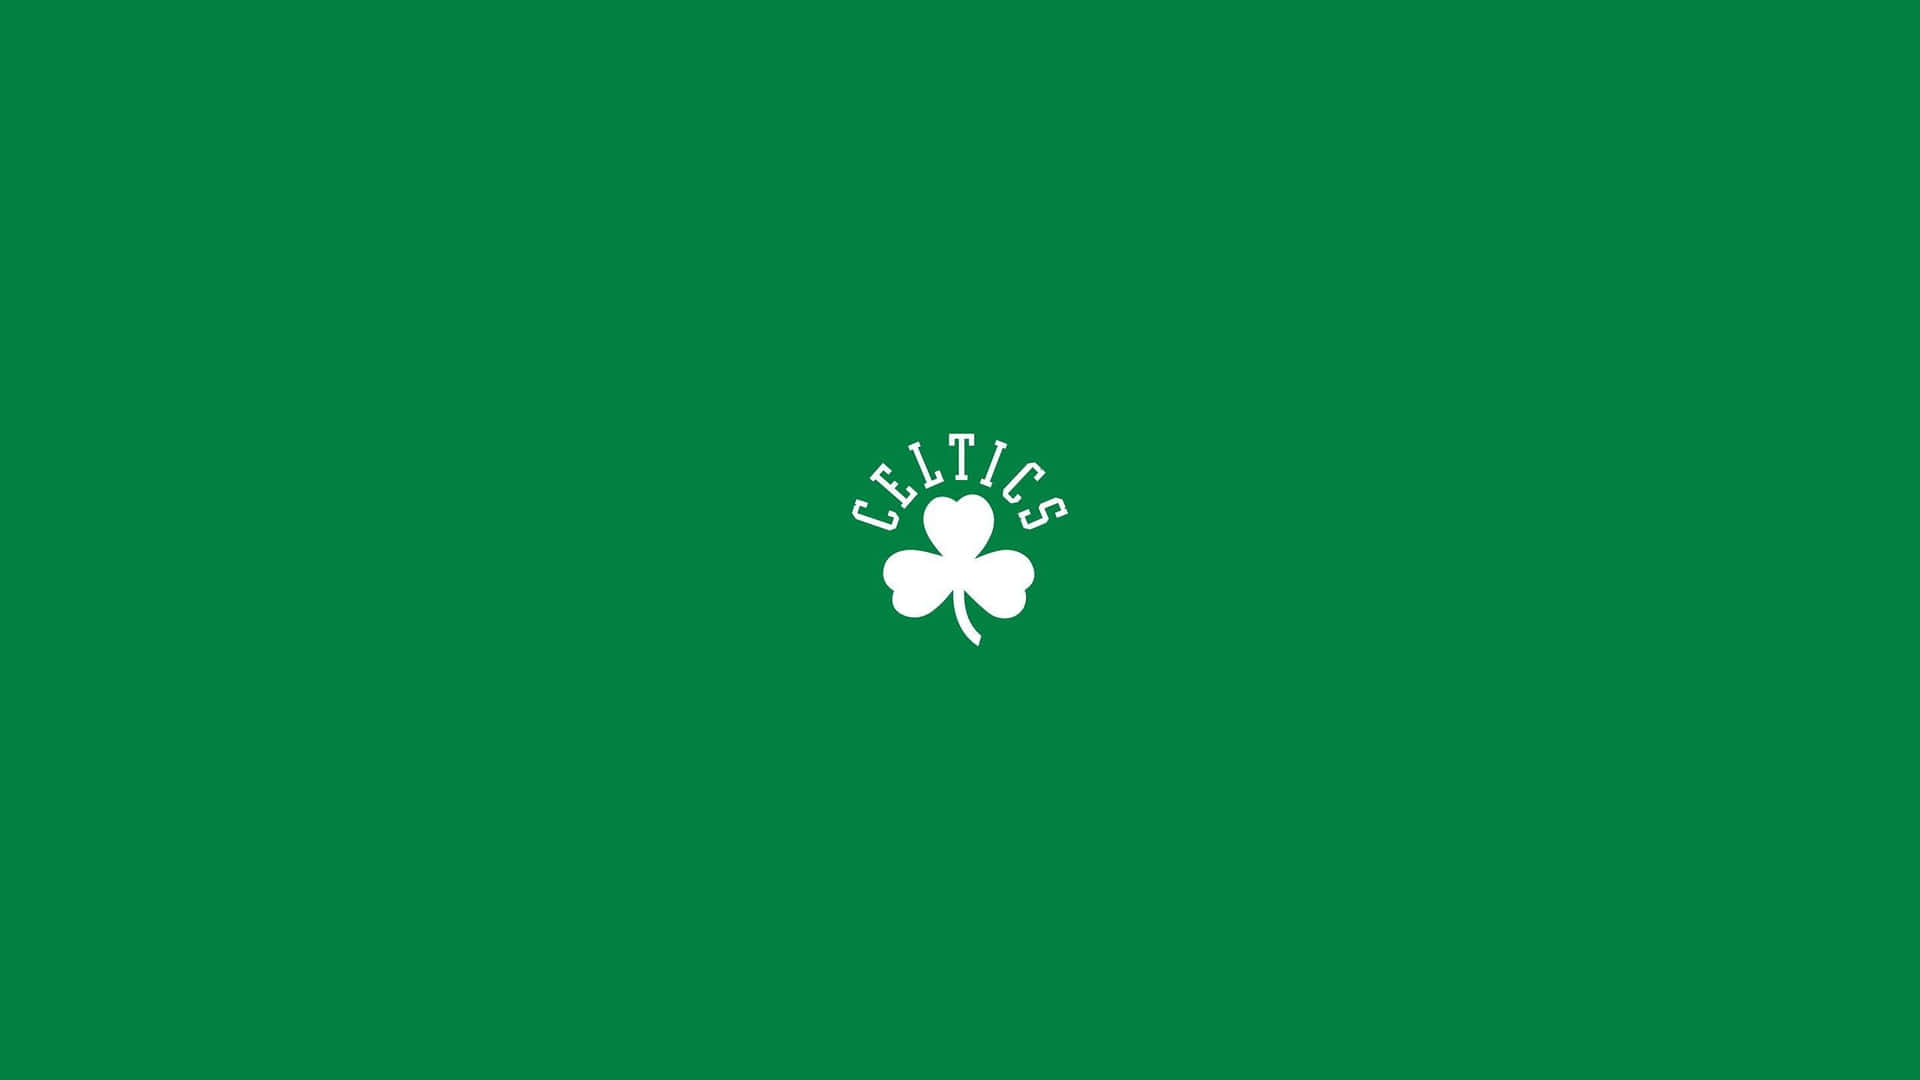 Celtics-logoet 2560 X 1440 Wallpaper